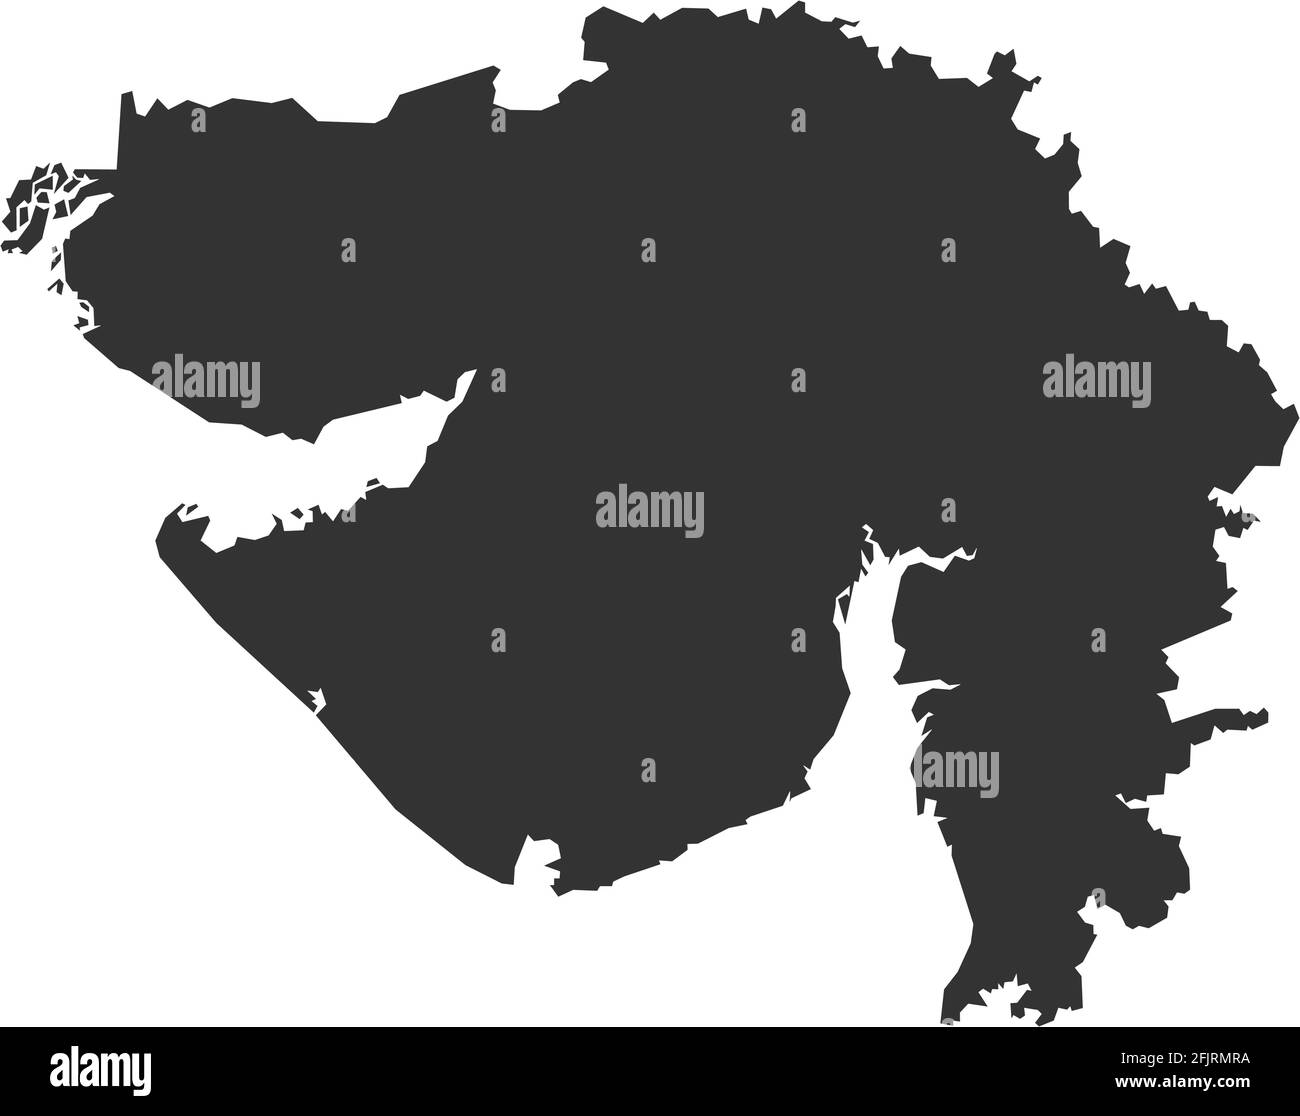 Mappa dello stato indiano del Gujarat. Sfondo grigio scuro. Progettazione grafica dei concetti aziendali. Illustrazione Vettoriale